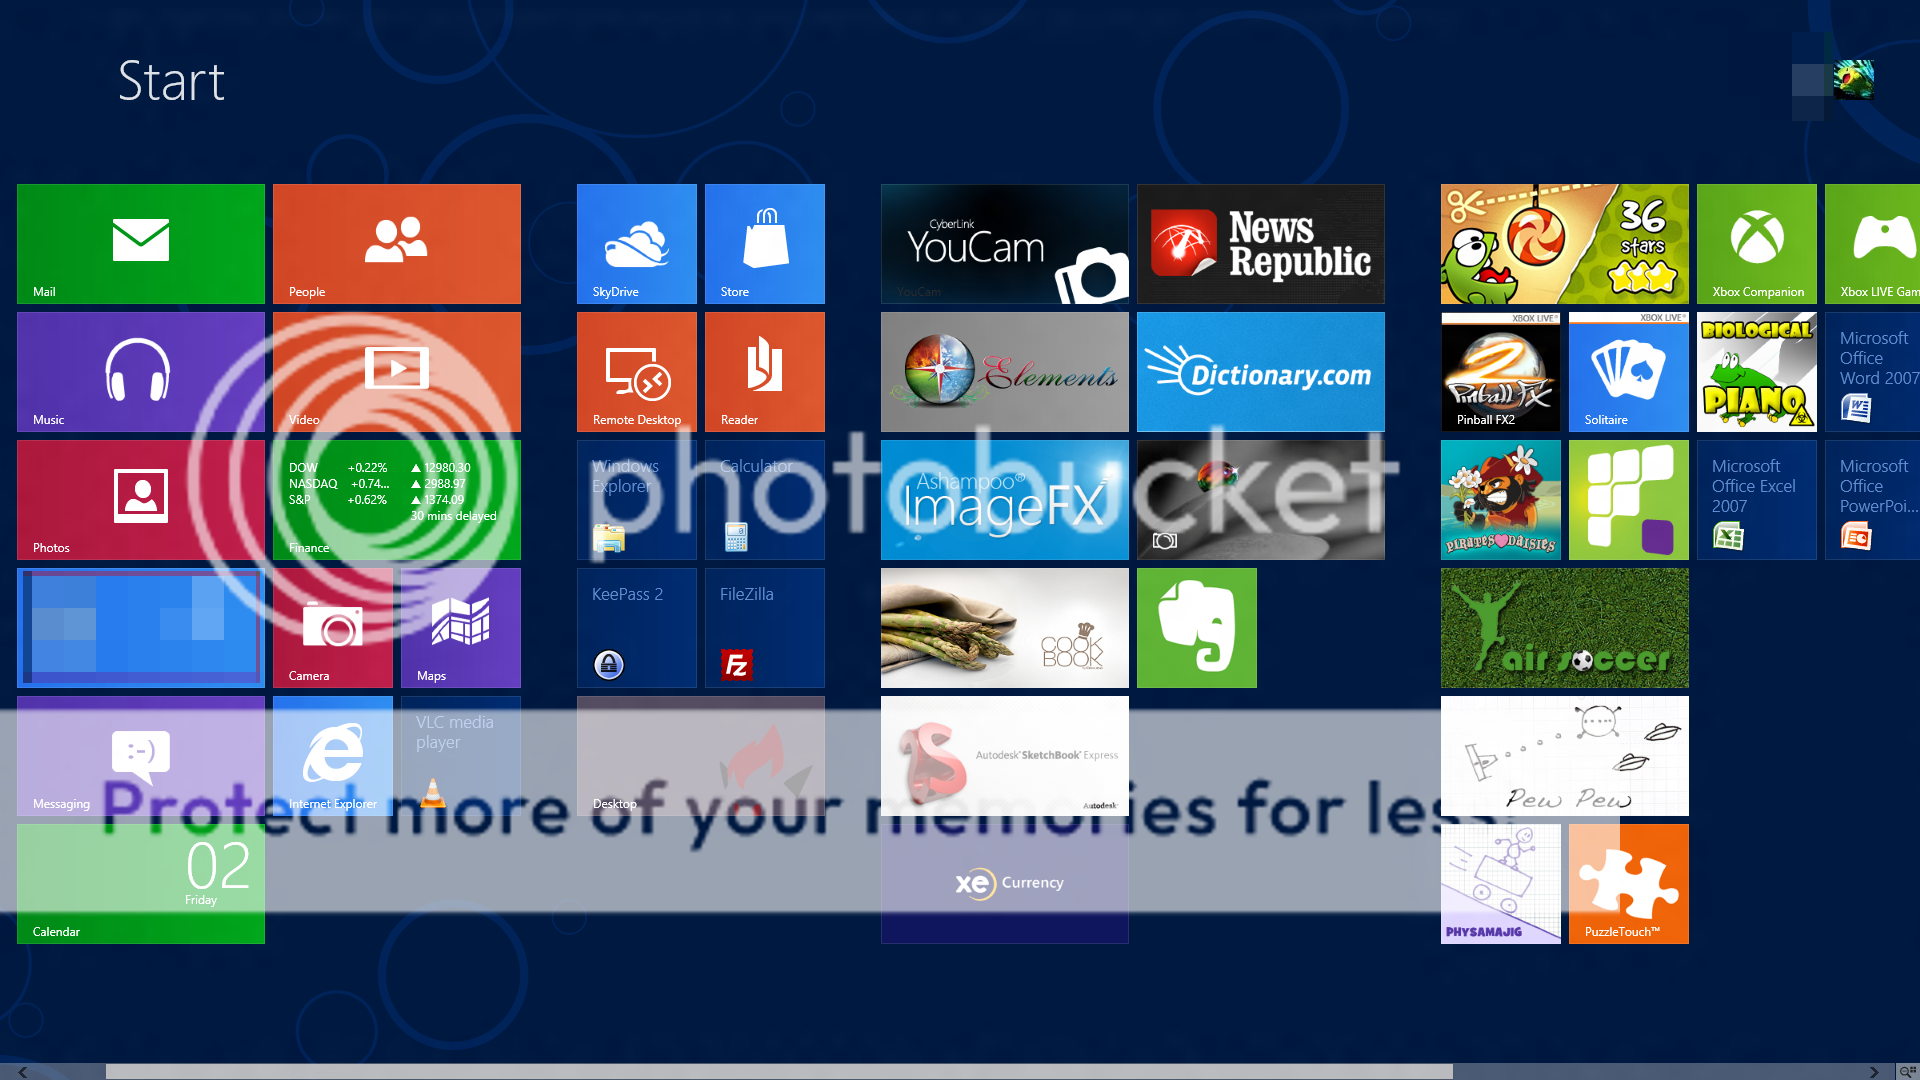 The New desktop screenshot thread